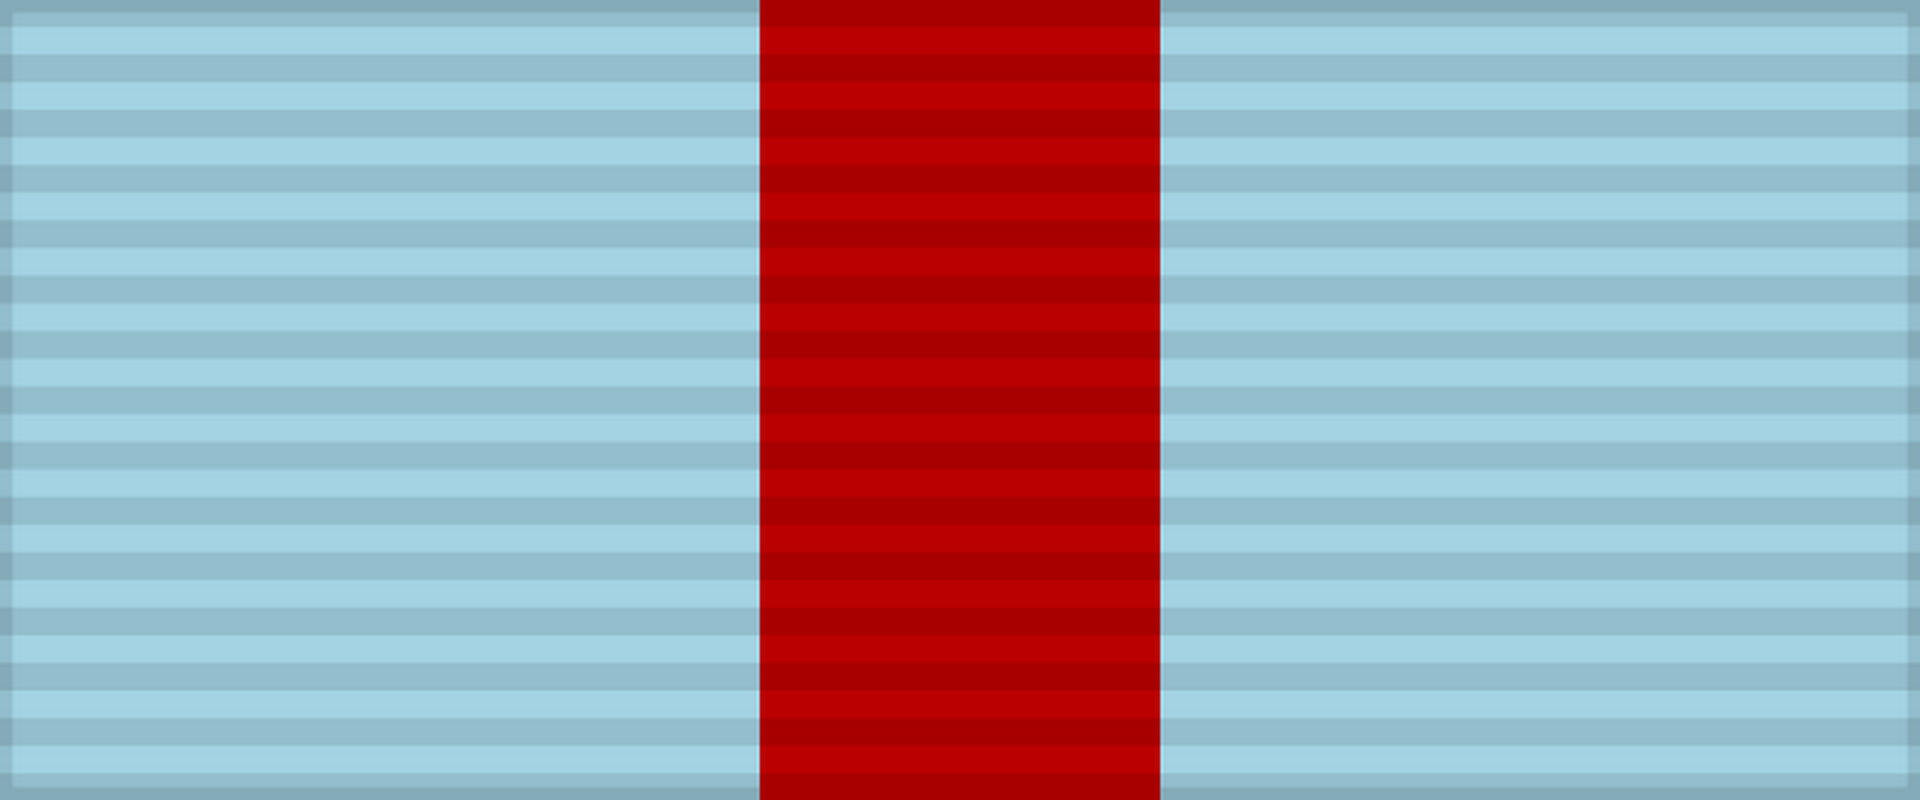 Планка ордена Александра Невского, Советский Союз, 1942 г.